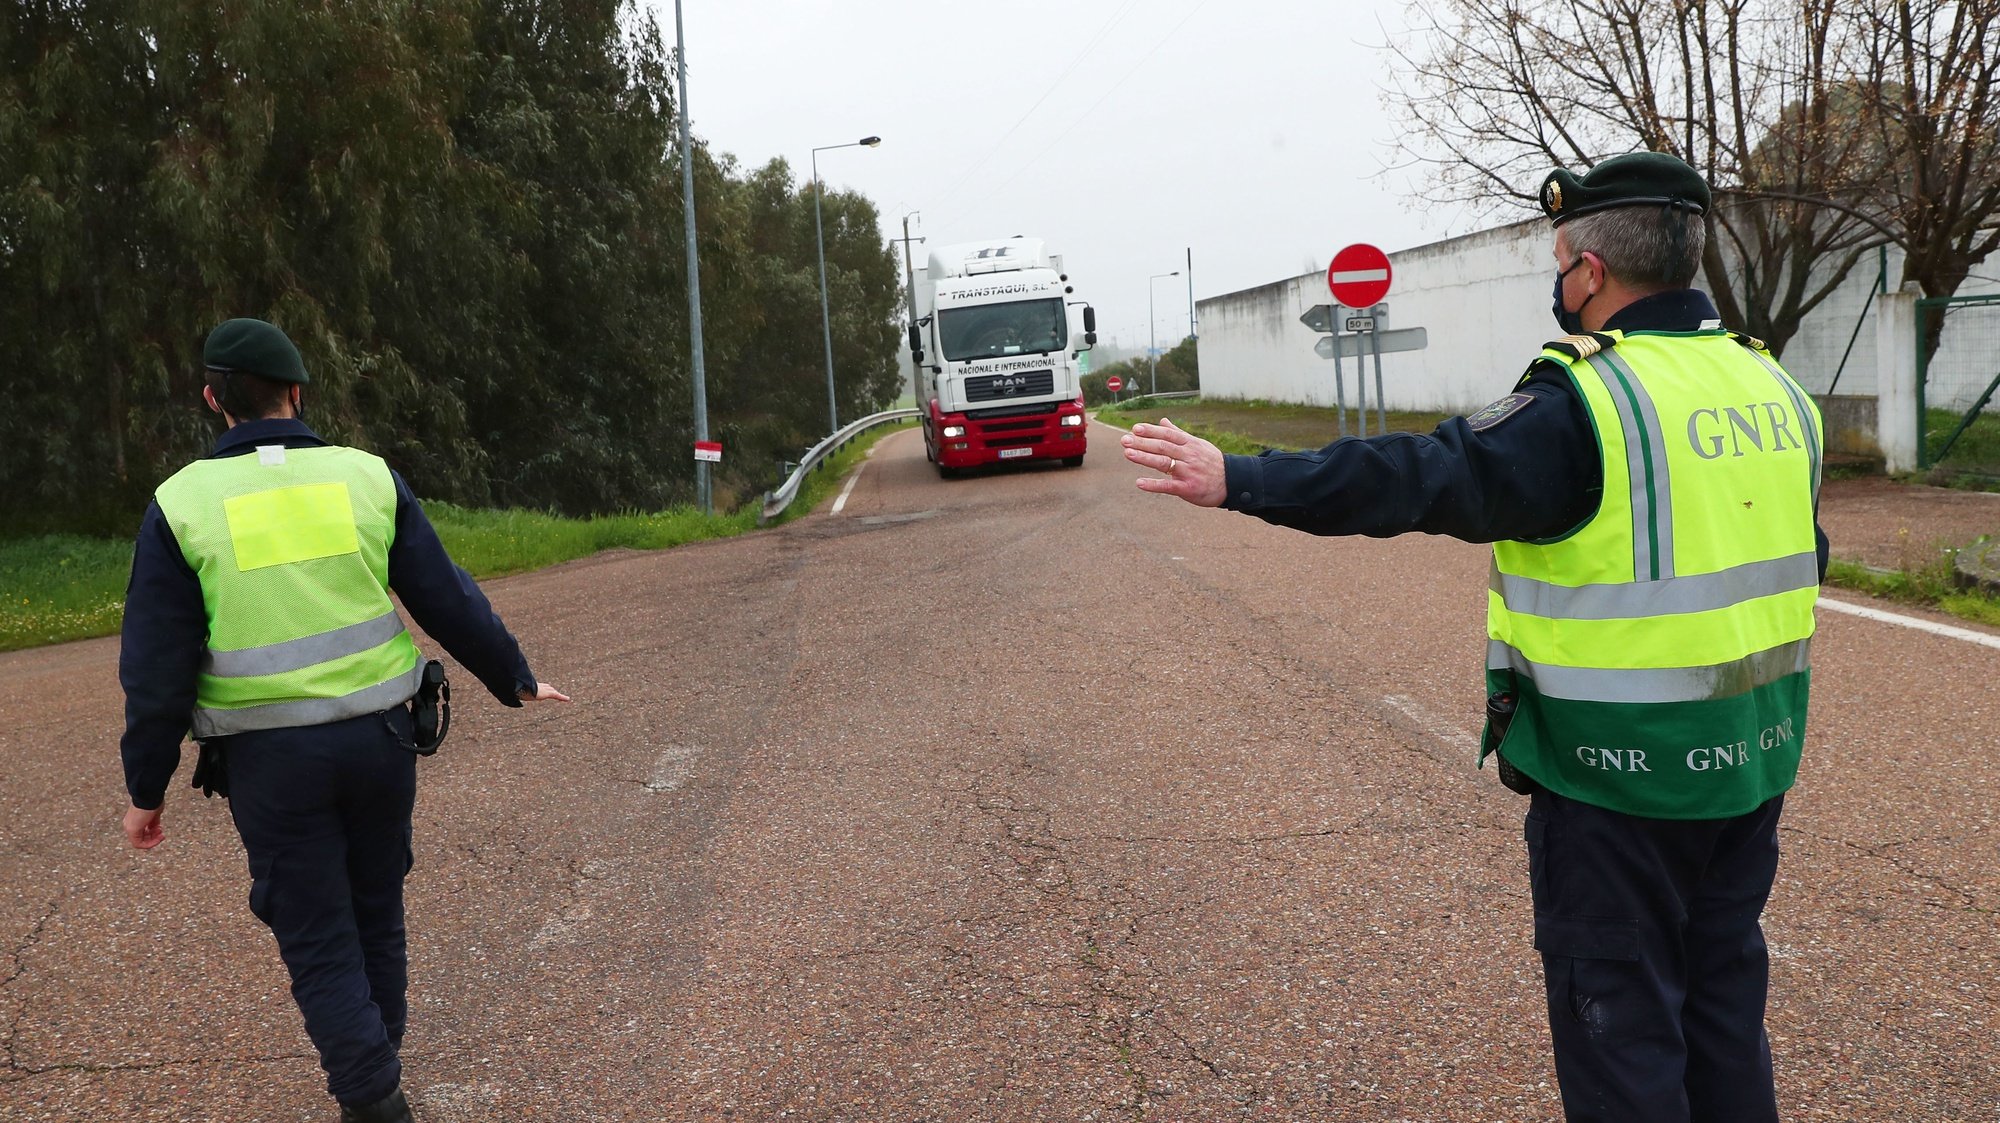 Agentes da GNR desviam os pesados de mercadorias durante uma operação de controlo na entrada em Portugal pela fronteira do Caia (Elvas). As fronteiras foram repostas desde as 00:00 de domingo, dia 31 de Janeiro, no âmbito das medidas para conter a propagação da covid-19 no território português. Elvas, 31 de janeiro de 2021. NUNO VEIGA/LUSA